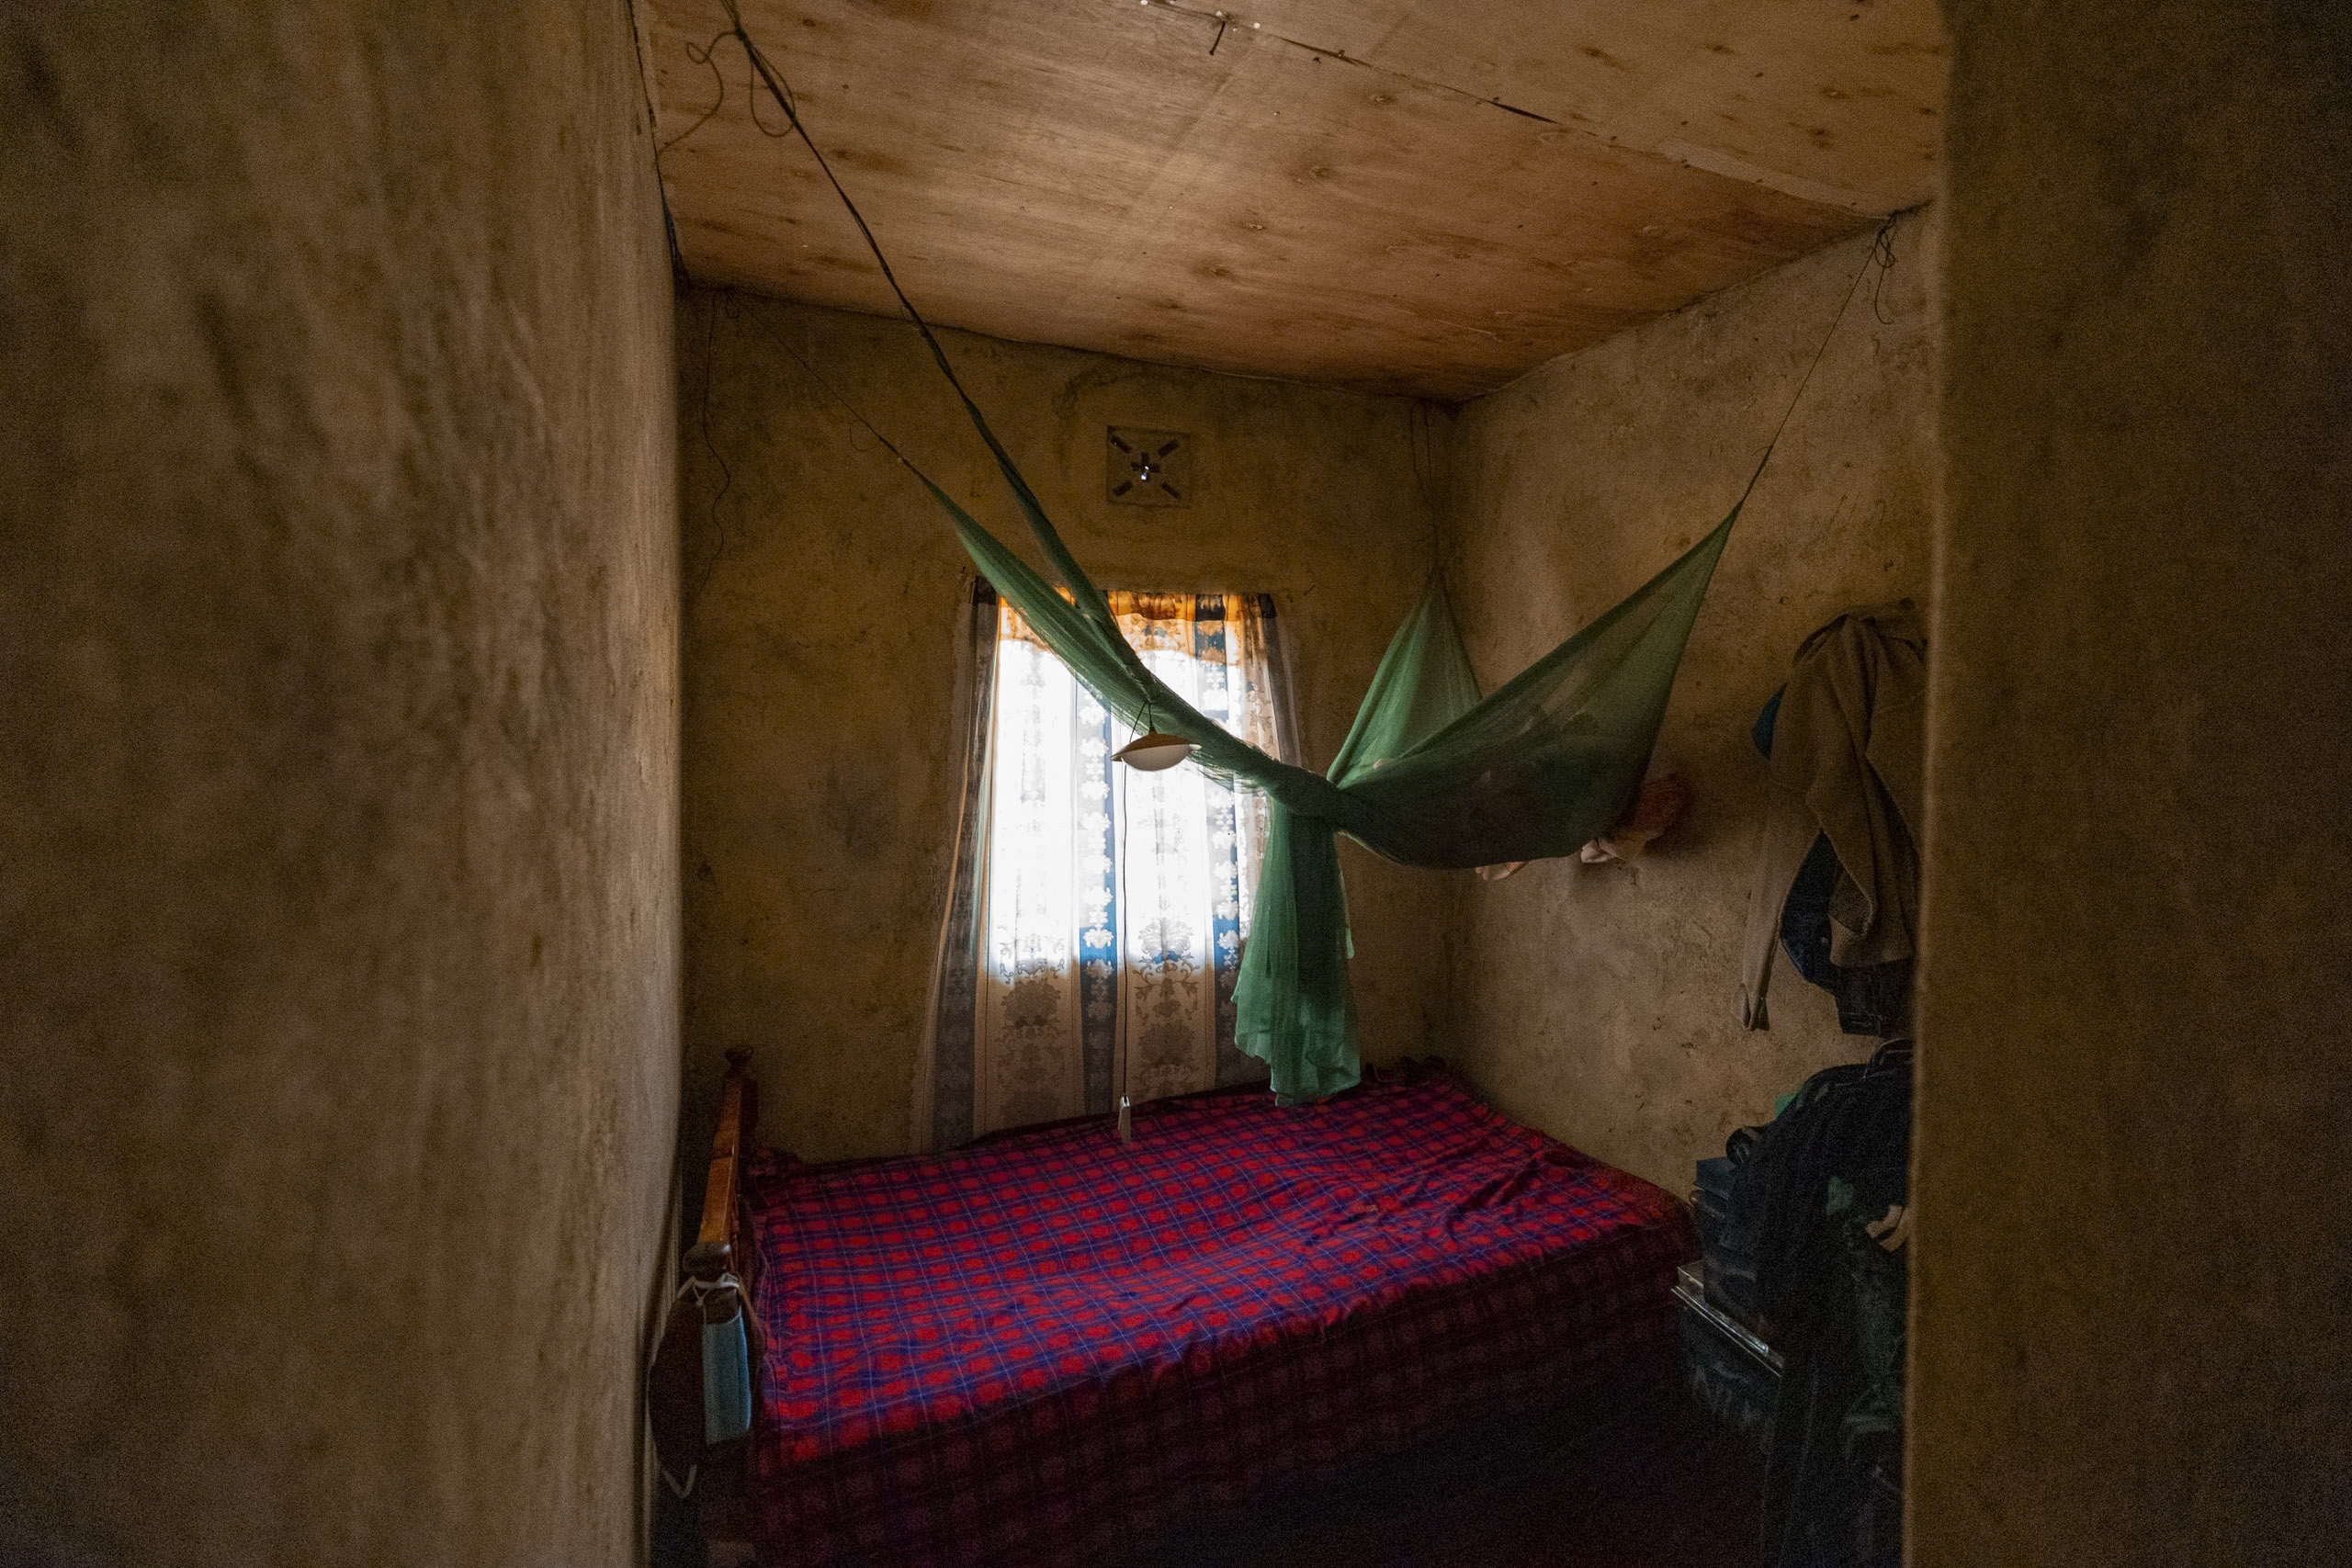 Ein kleines, rustikales Zimmer mit einer grünen Hängematte über einem rot und blau gemusterten Bett. Ein einzelnes Fenster lässt Licht herein, erhellt die nackten Holzwände und schafft eine schlichte, schwach beleuchtete Atmosphäre. © Fotografie Tomas Rodriguez